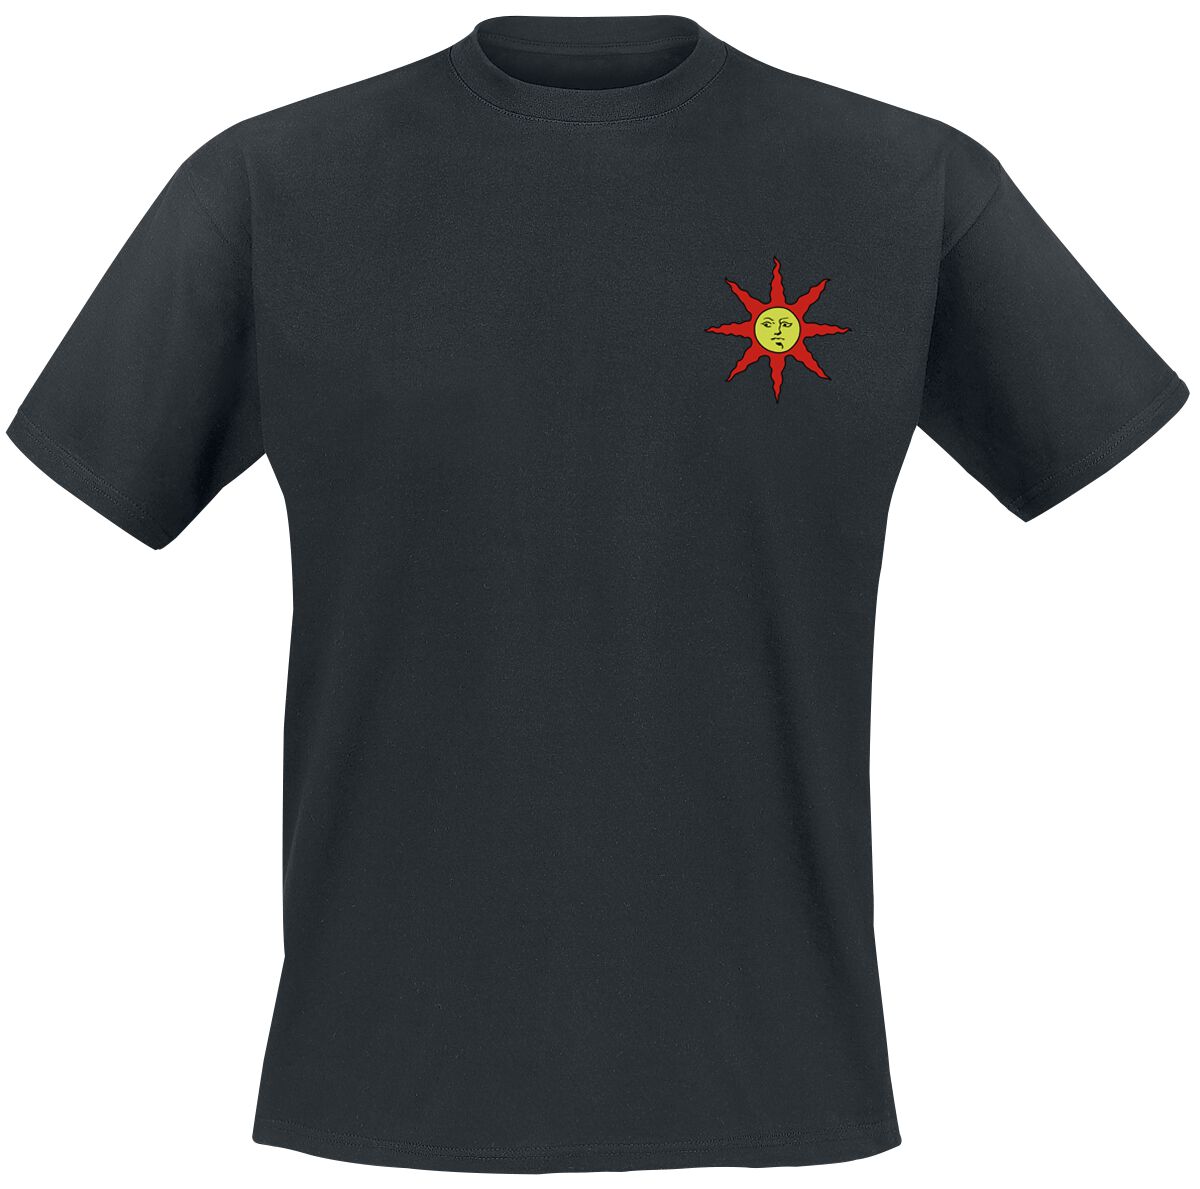 Dark Souls - Gaming T-Shirt - Praise the Sun - S bis XL - für Männer - Größe L - schwarz  - EMP exklusives Merchandise!